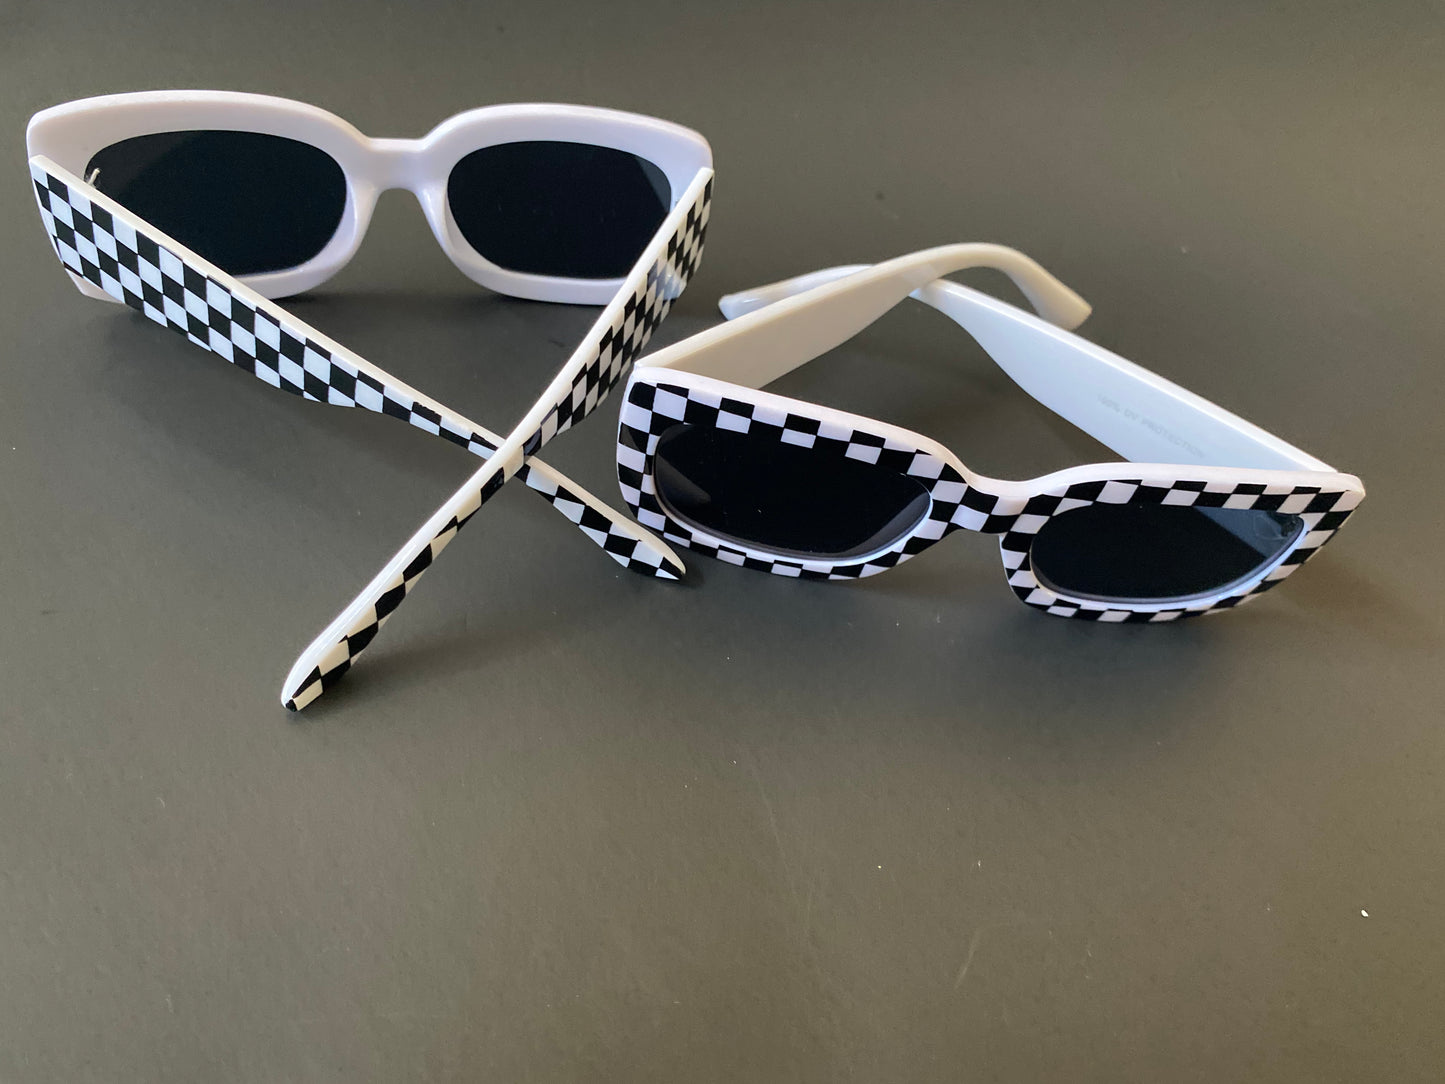 Black & White Checkered sunglasses